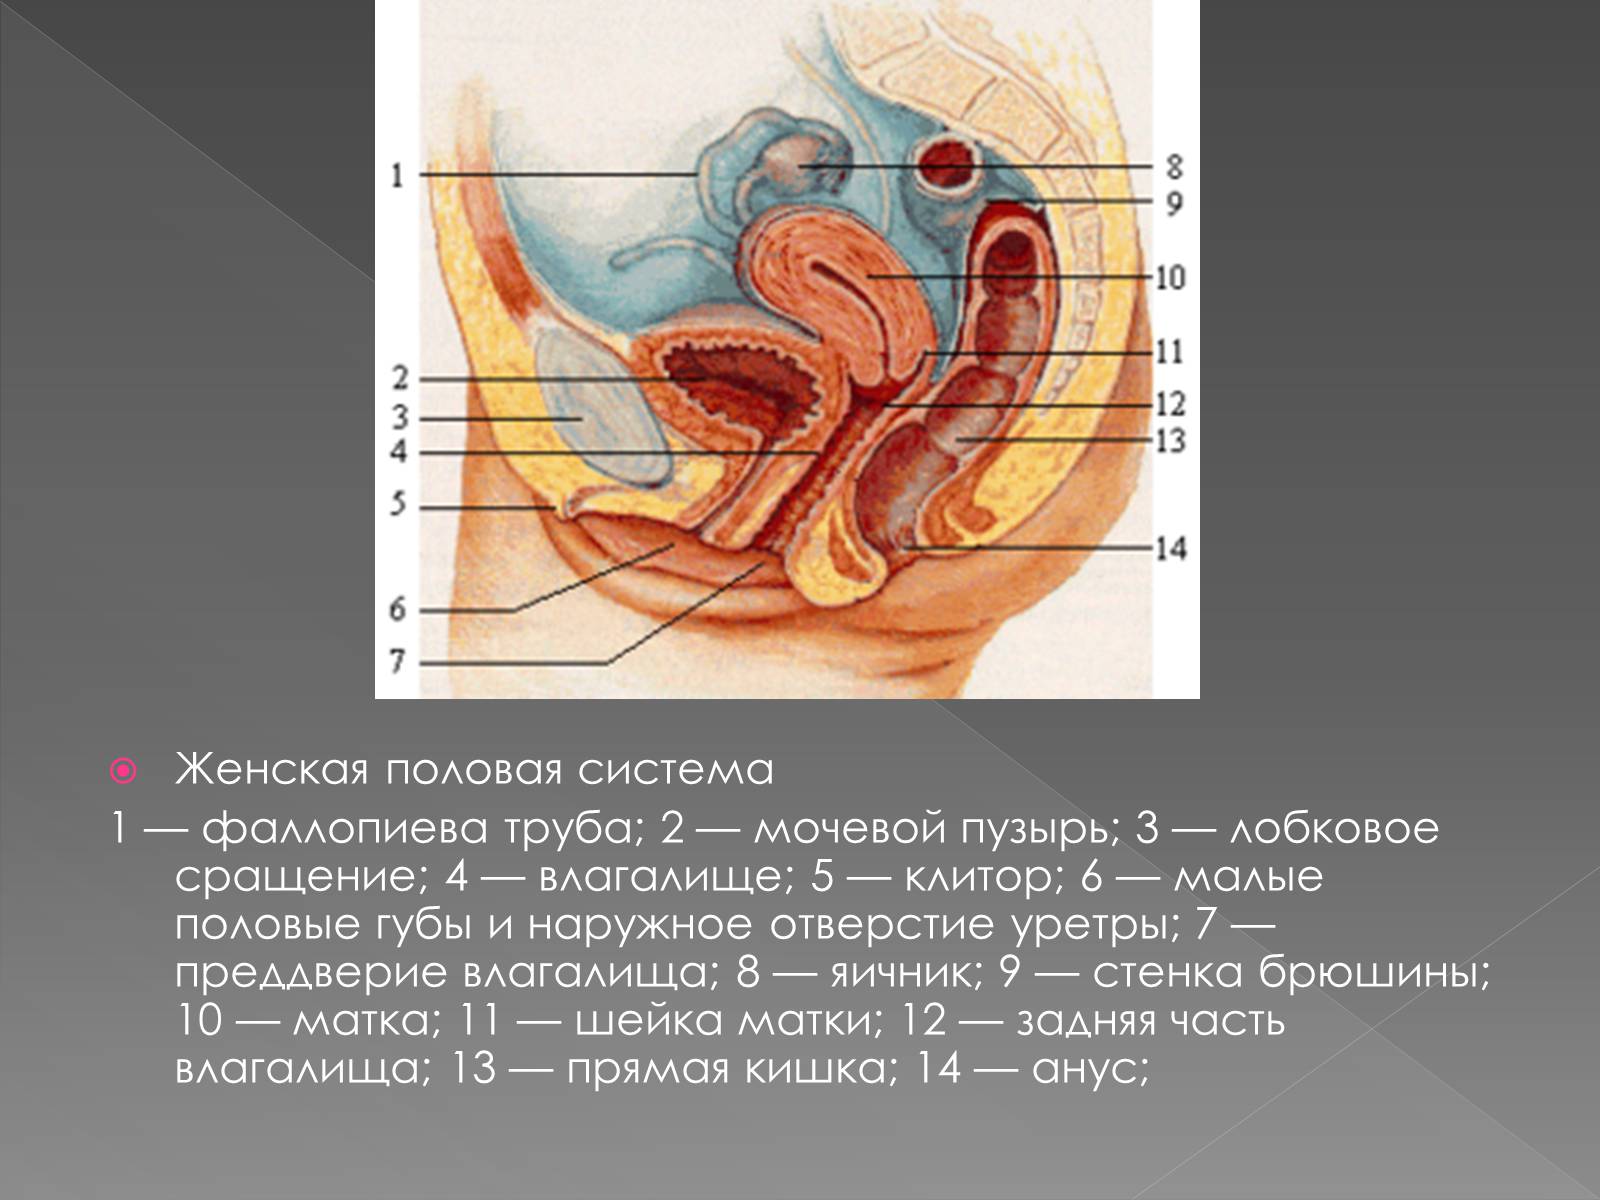 Название органов женской половой системы. Женская половая система анатомия. Наружные женские половые органы. Наружные женские половые органы строение. Анатомия женского влагалища.